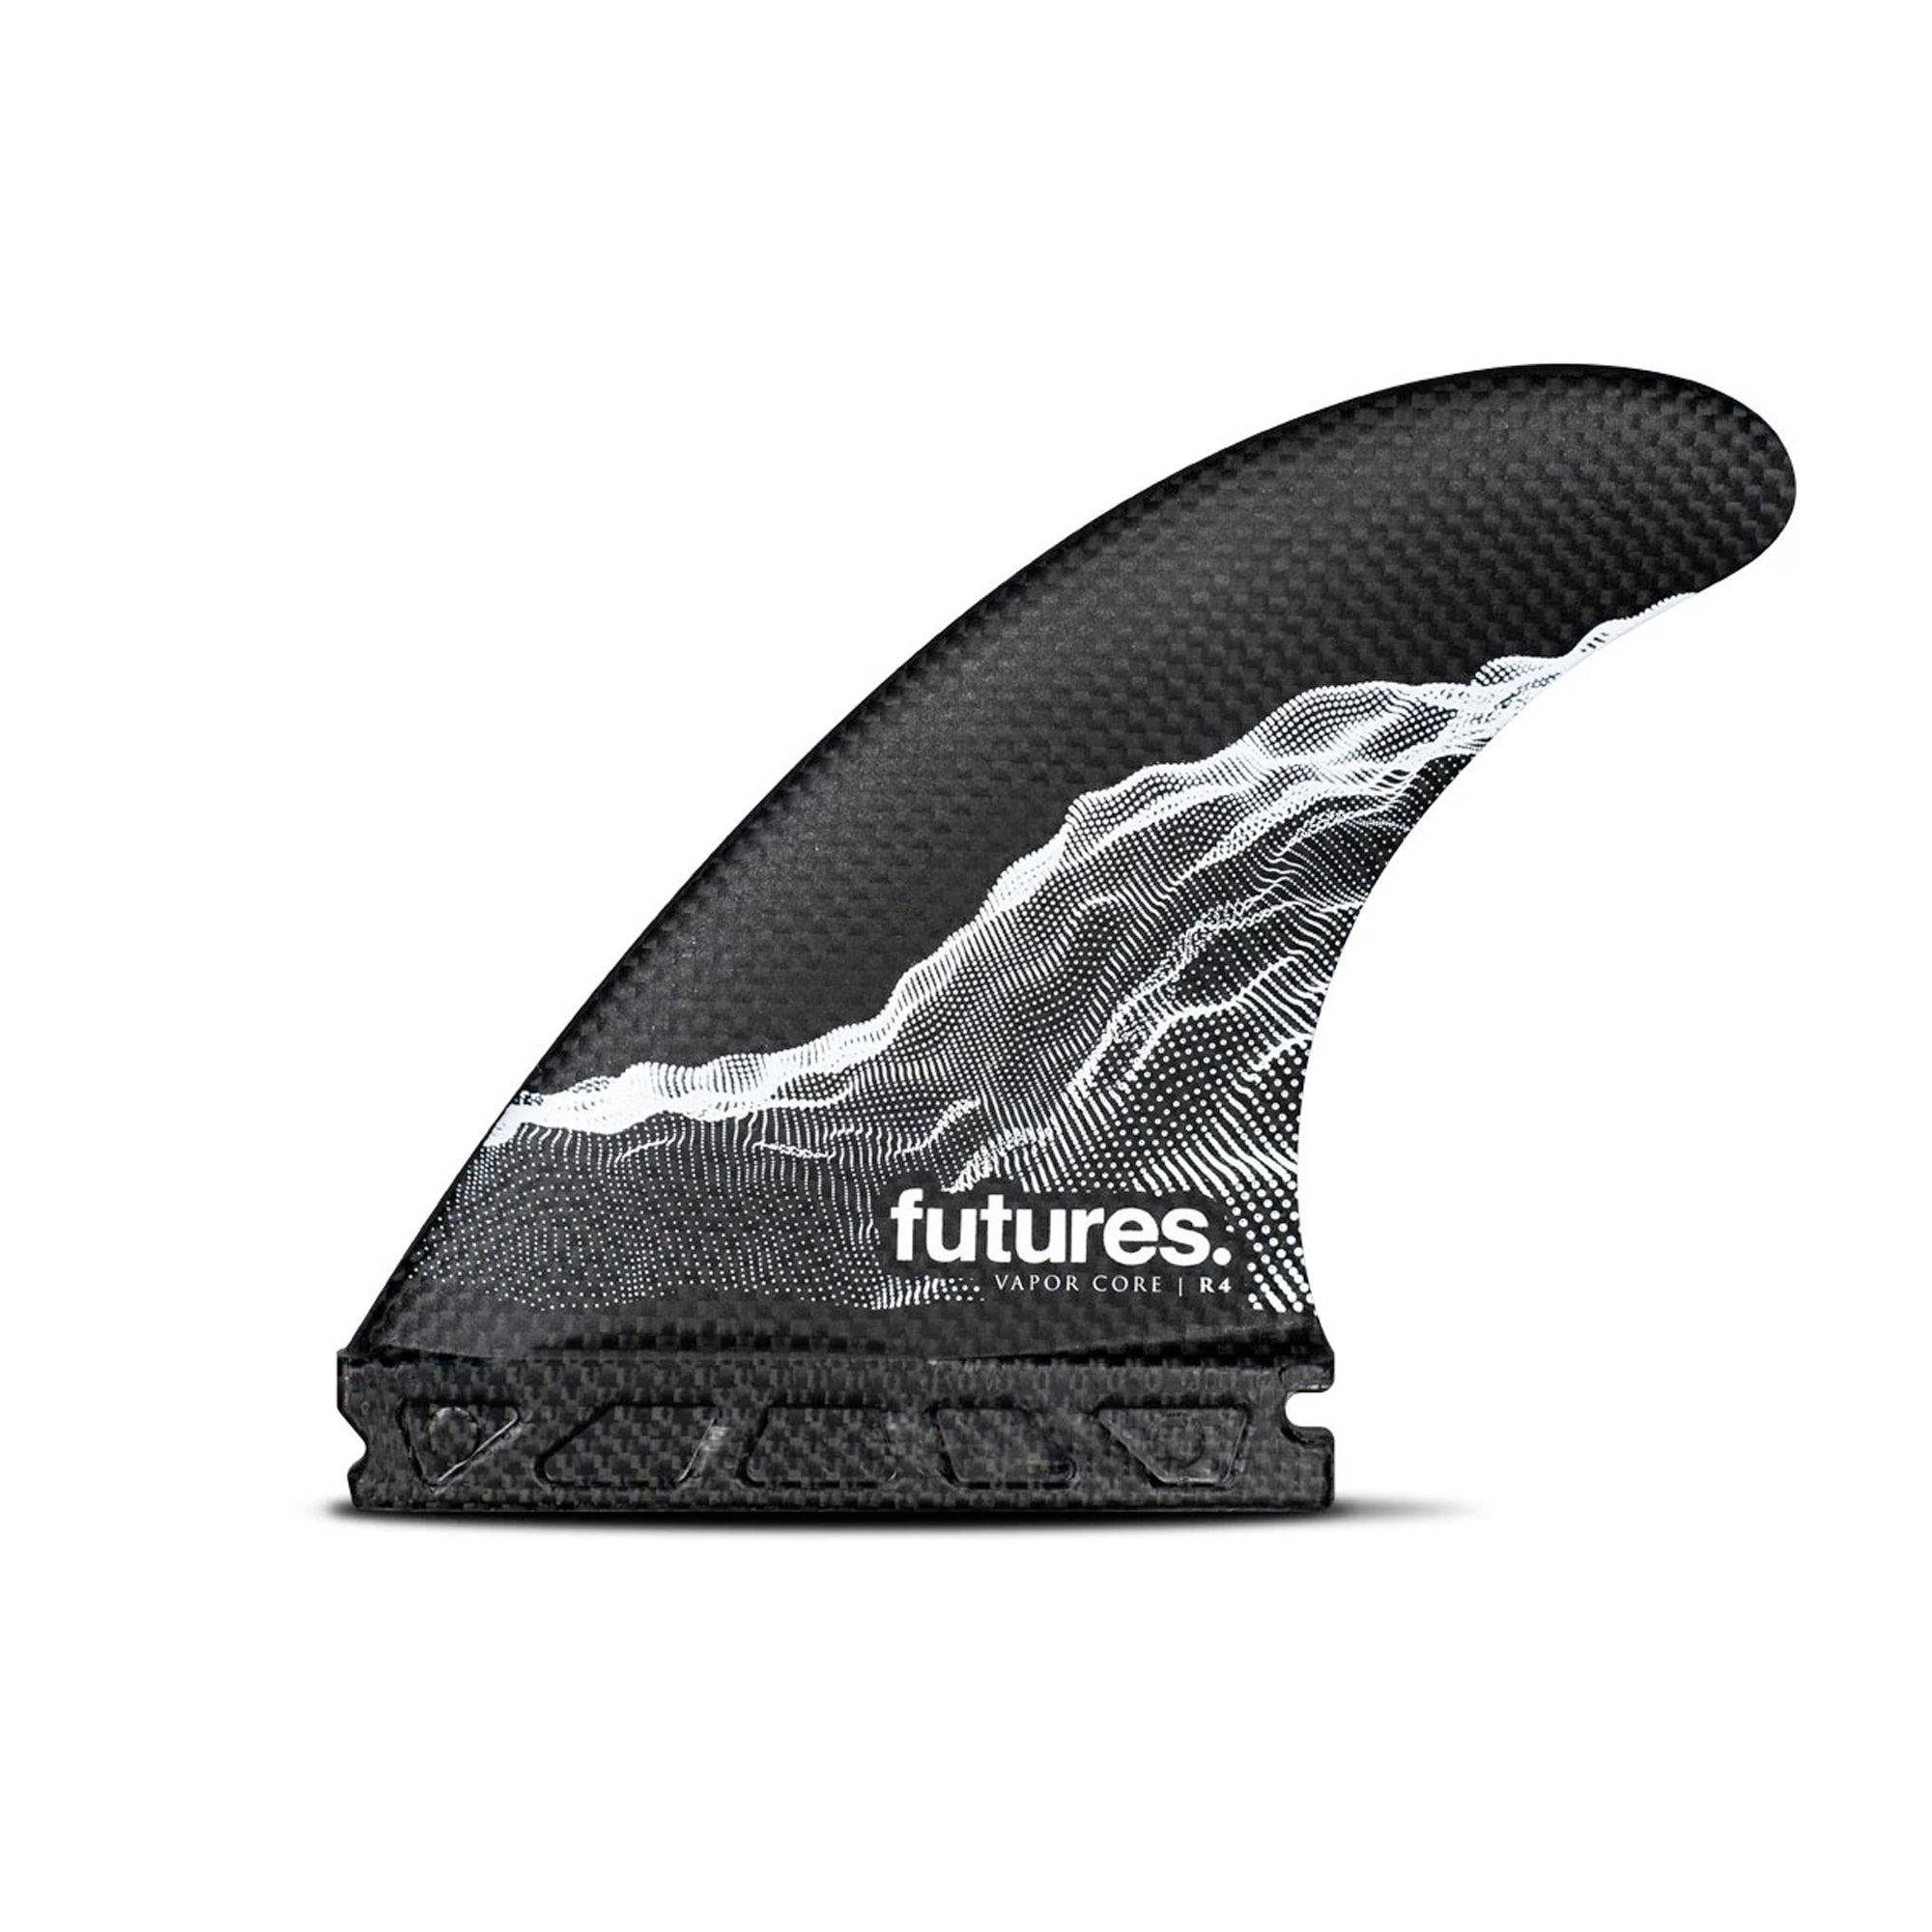 Futures R4 Vapor Core Thruster Fin Set - Small